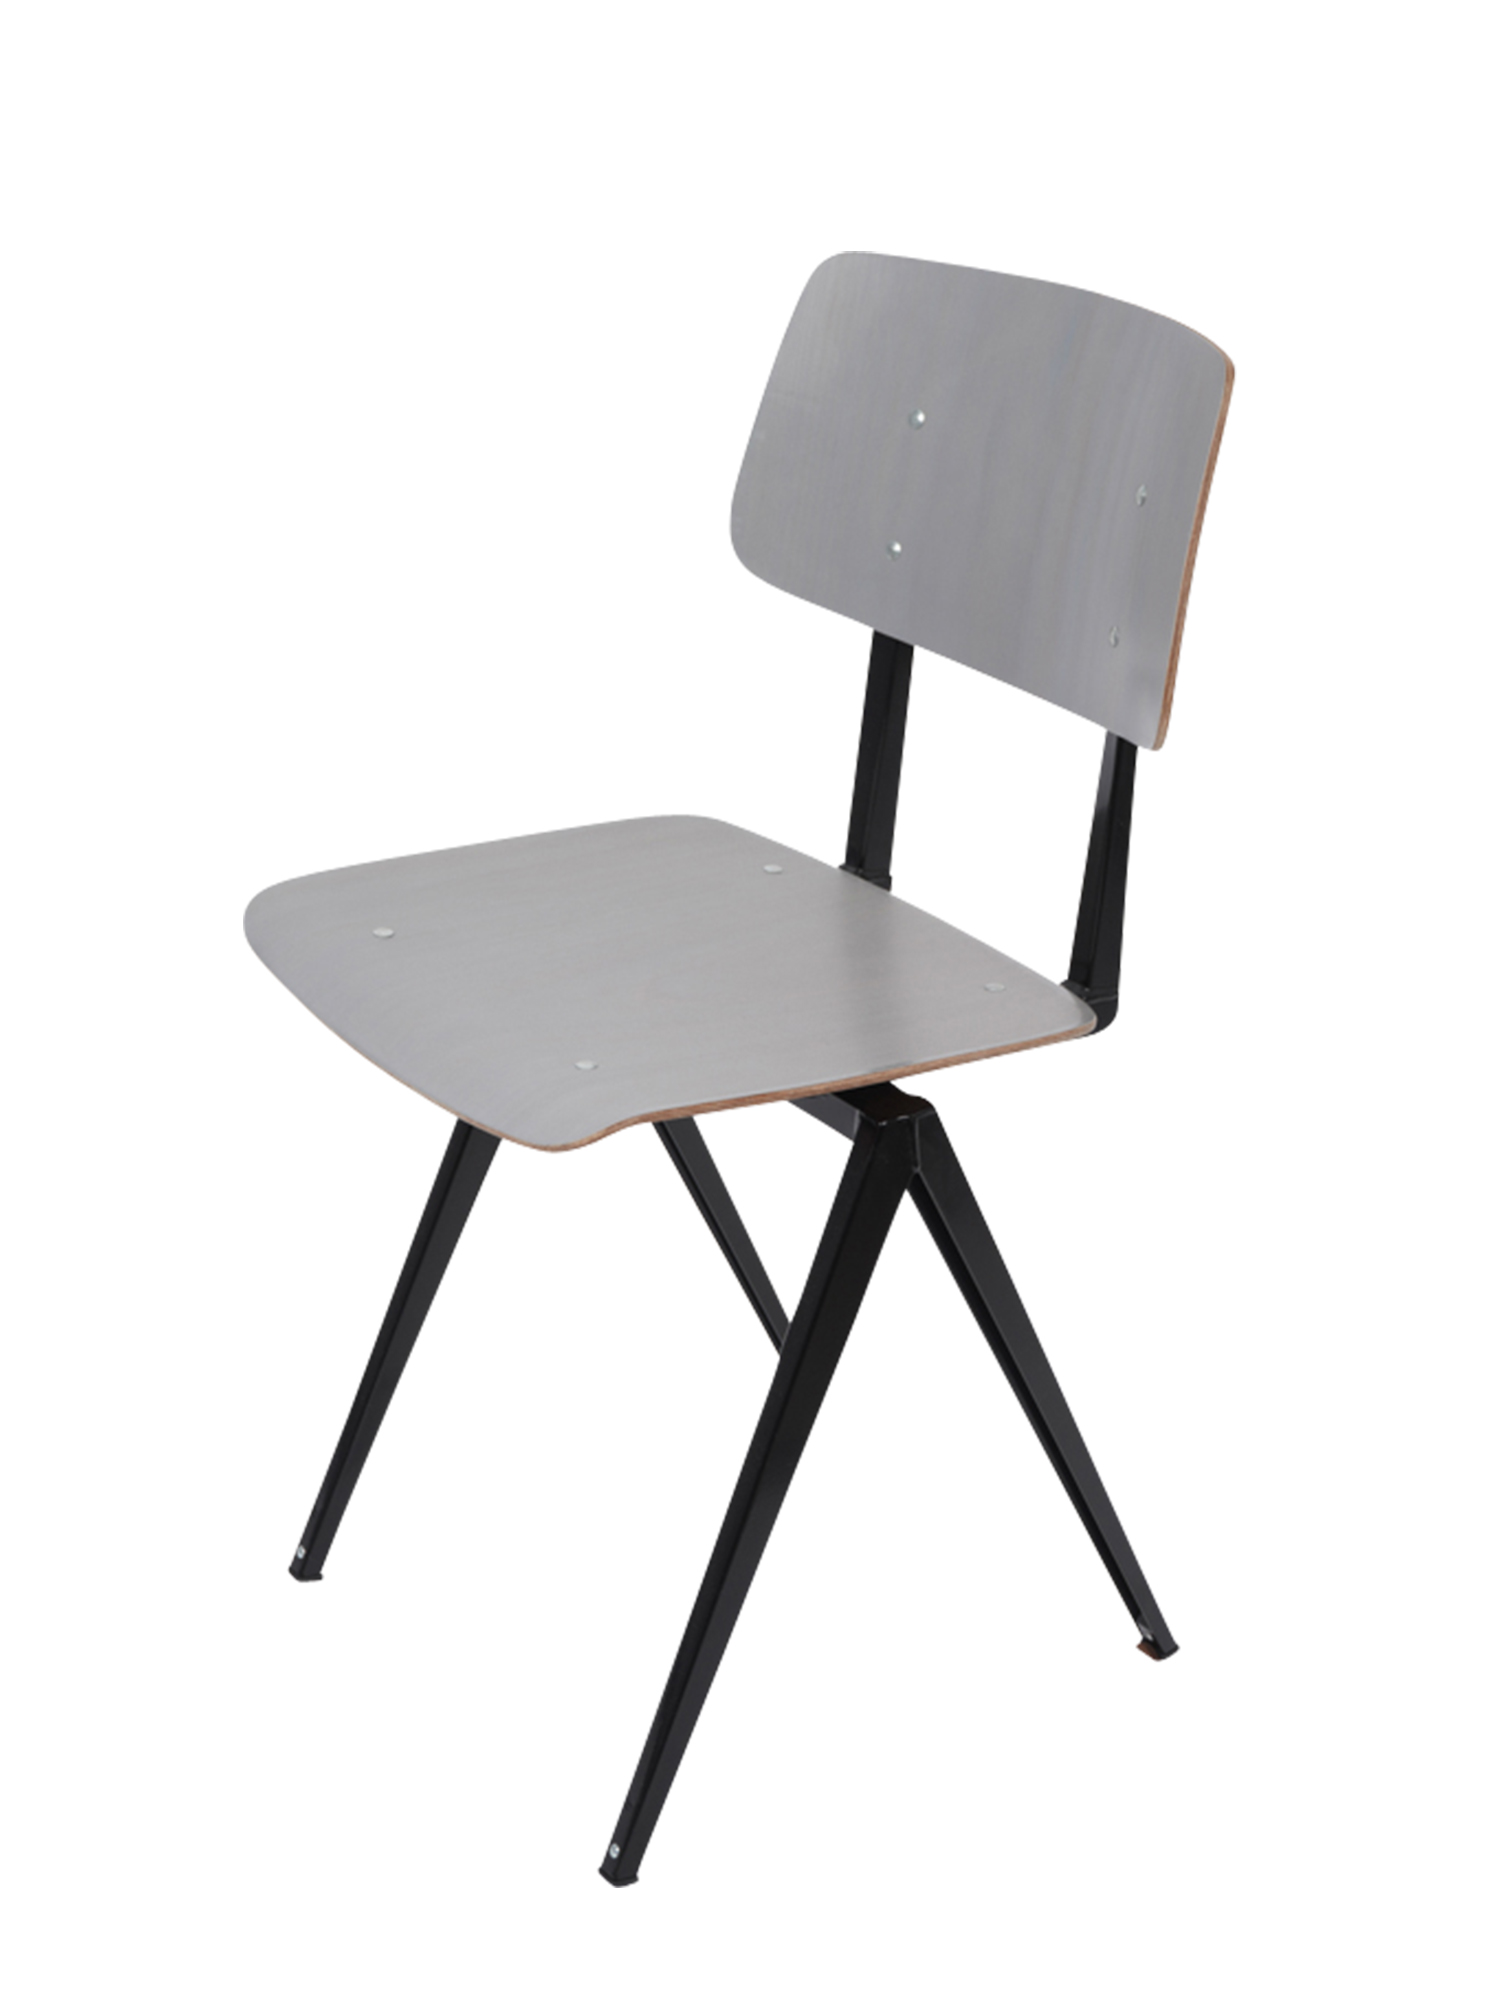 [GALVANITAS] S16 Side Chair Black/Grey